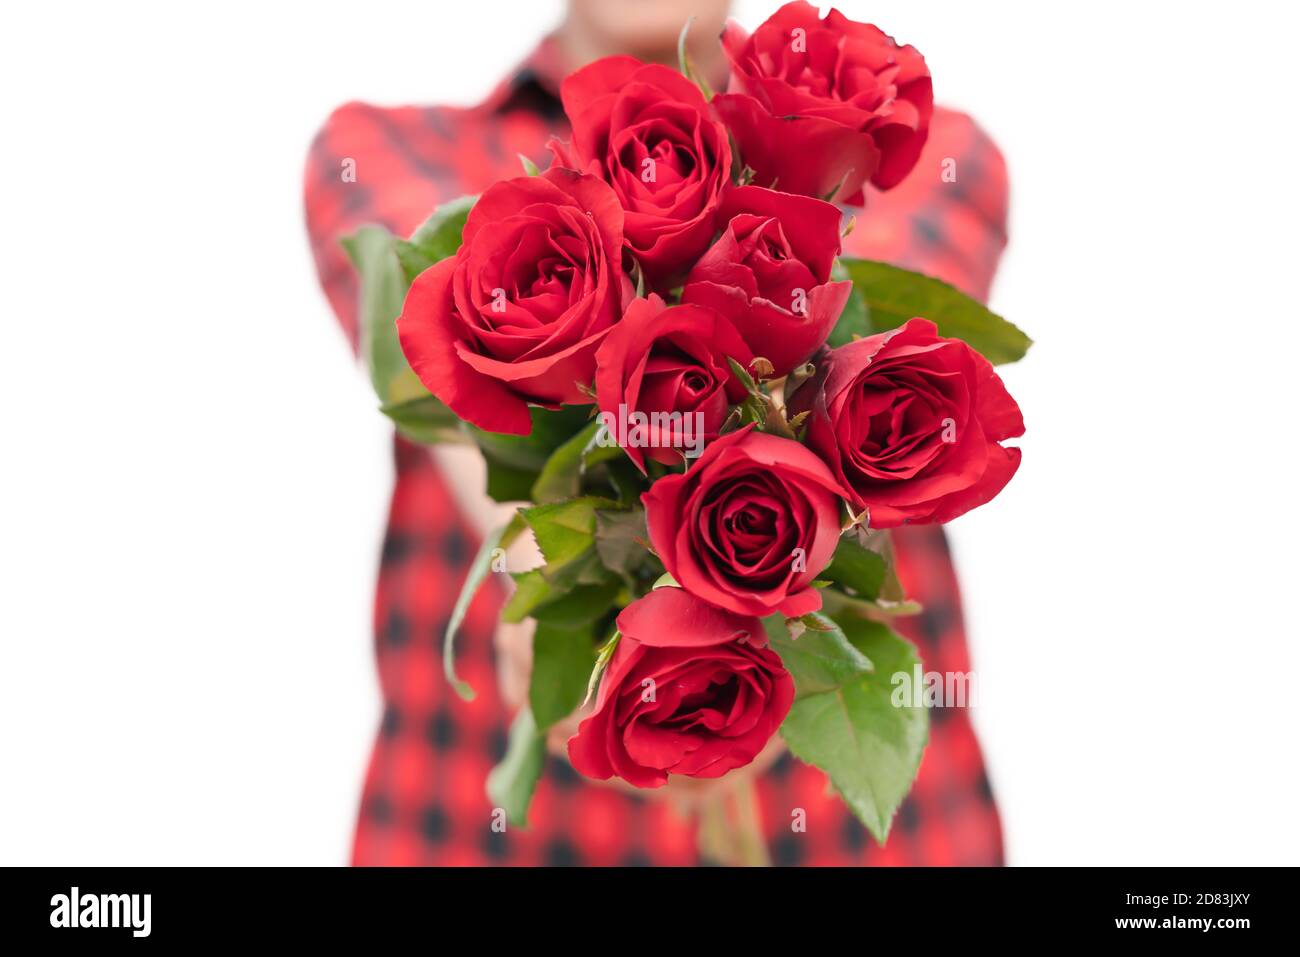 La rose rouge est un symbole d'amour. La fille a tenu beaucoup de roses  rouges pour envoyer un cadeau à son amant le jour de la Saint-Valentin.  Femmes avec la fleur sur